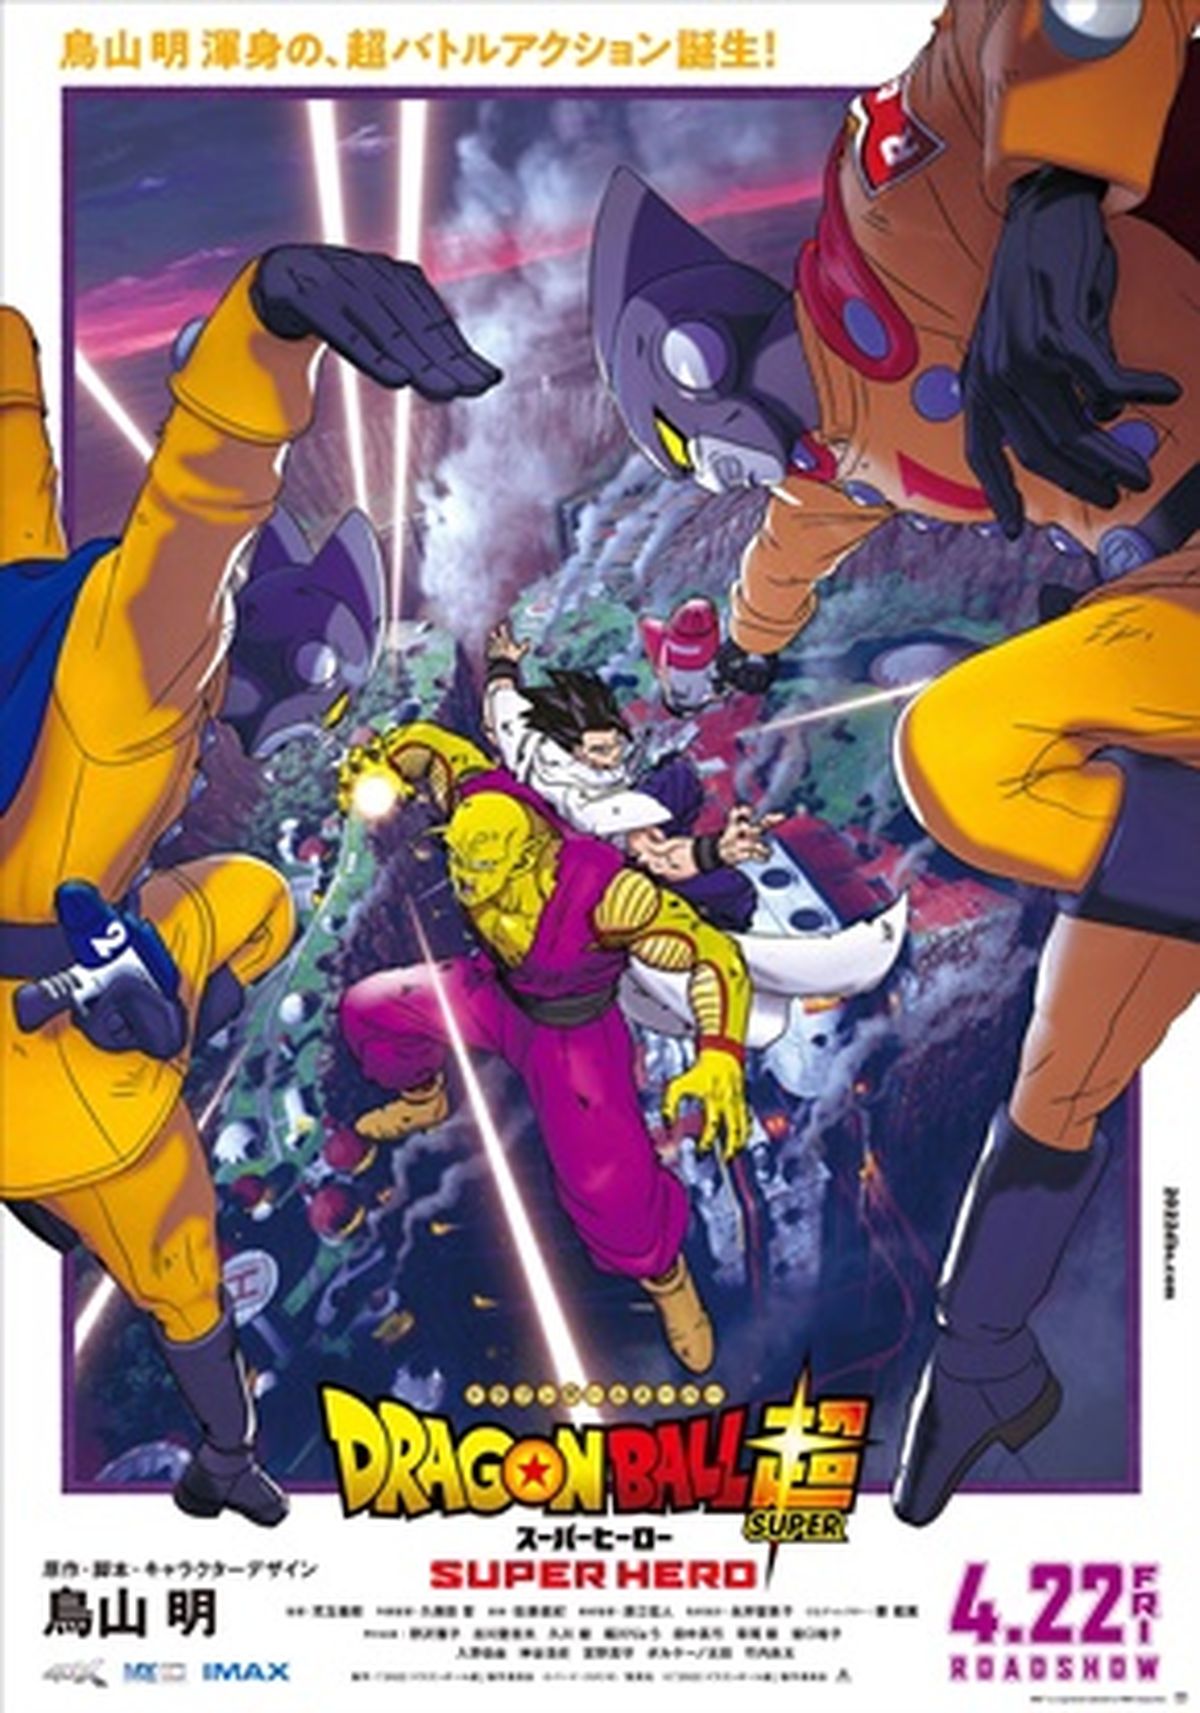 Reseña de Dragon Ball Super #91: el manga (casi) recupera la magia